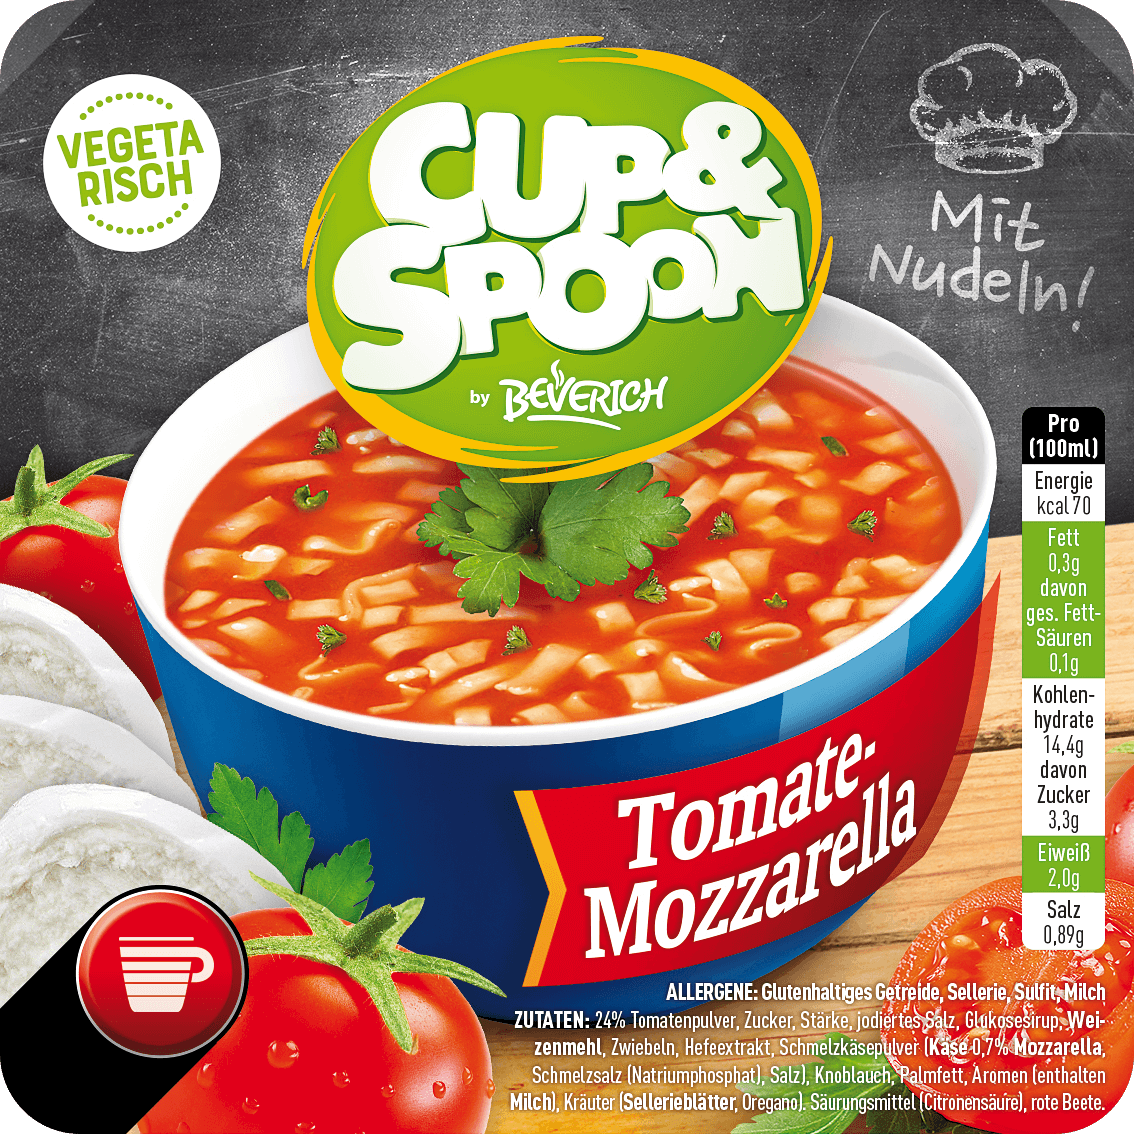 Cup&Spoon - Tomate-Mozzarella (mit Nudeln)